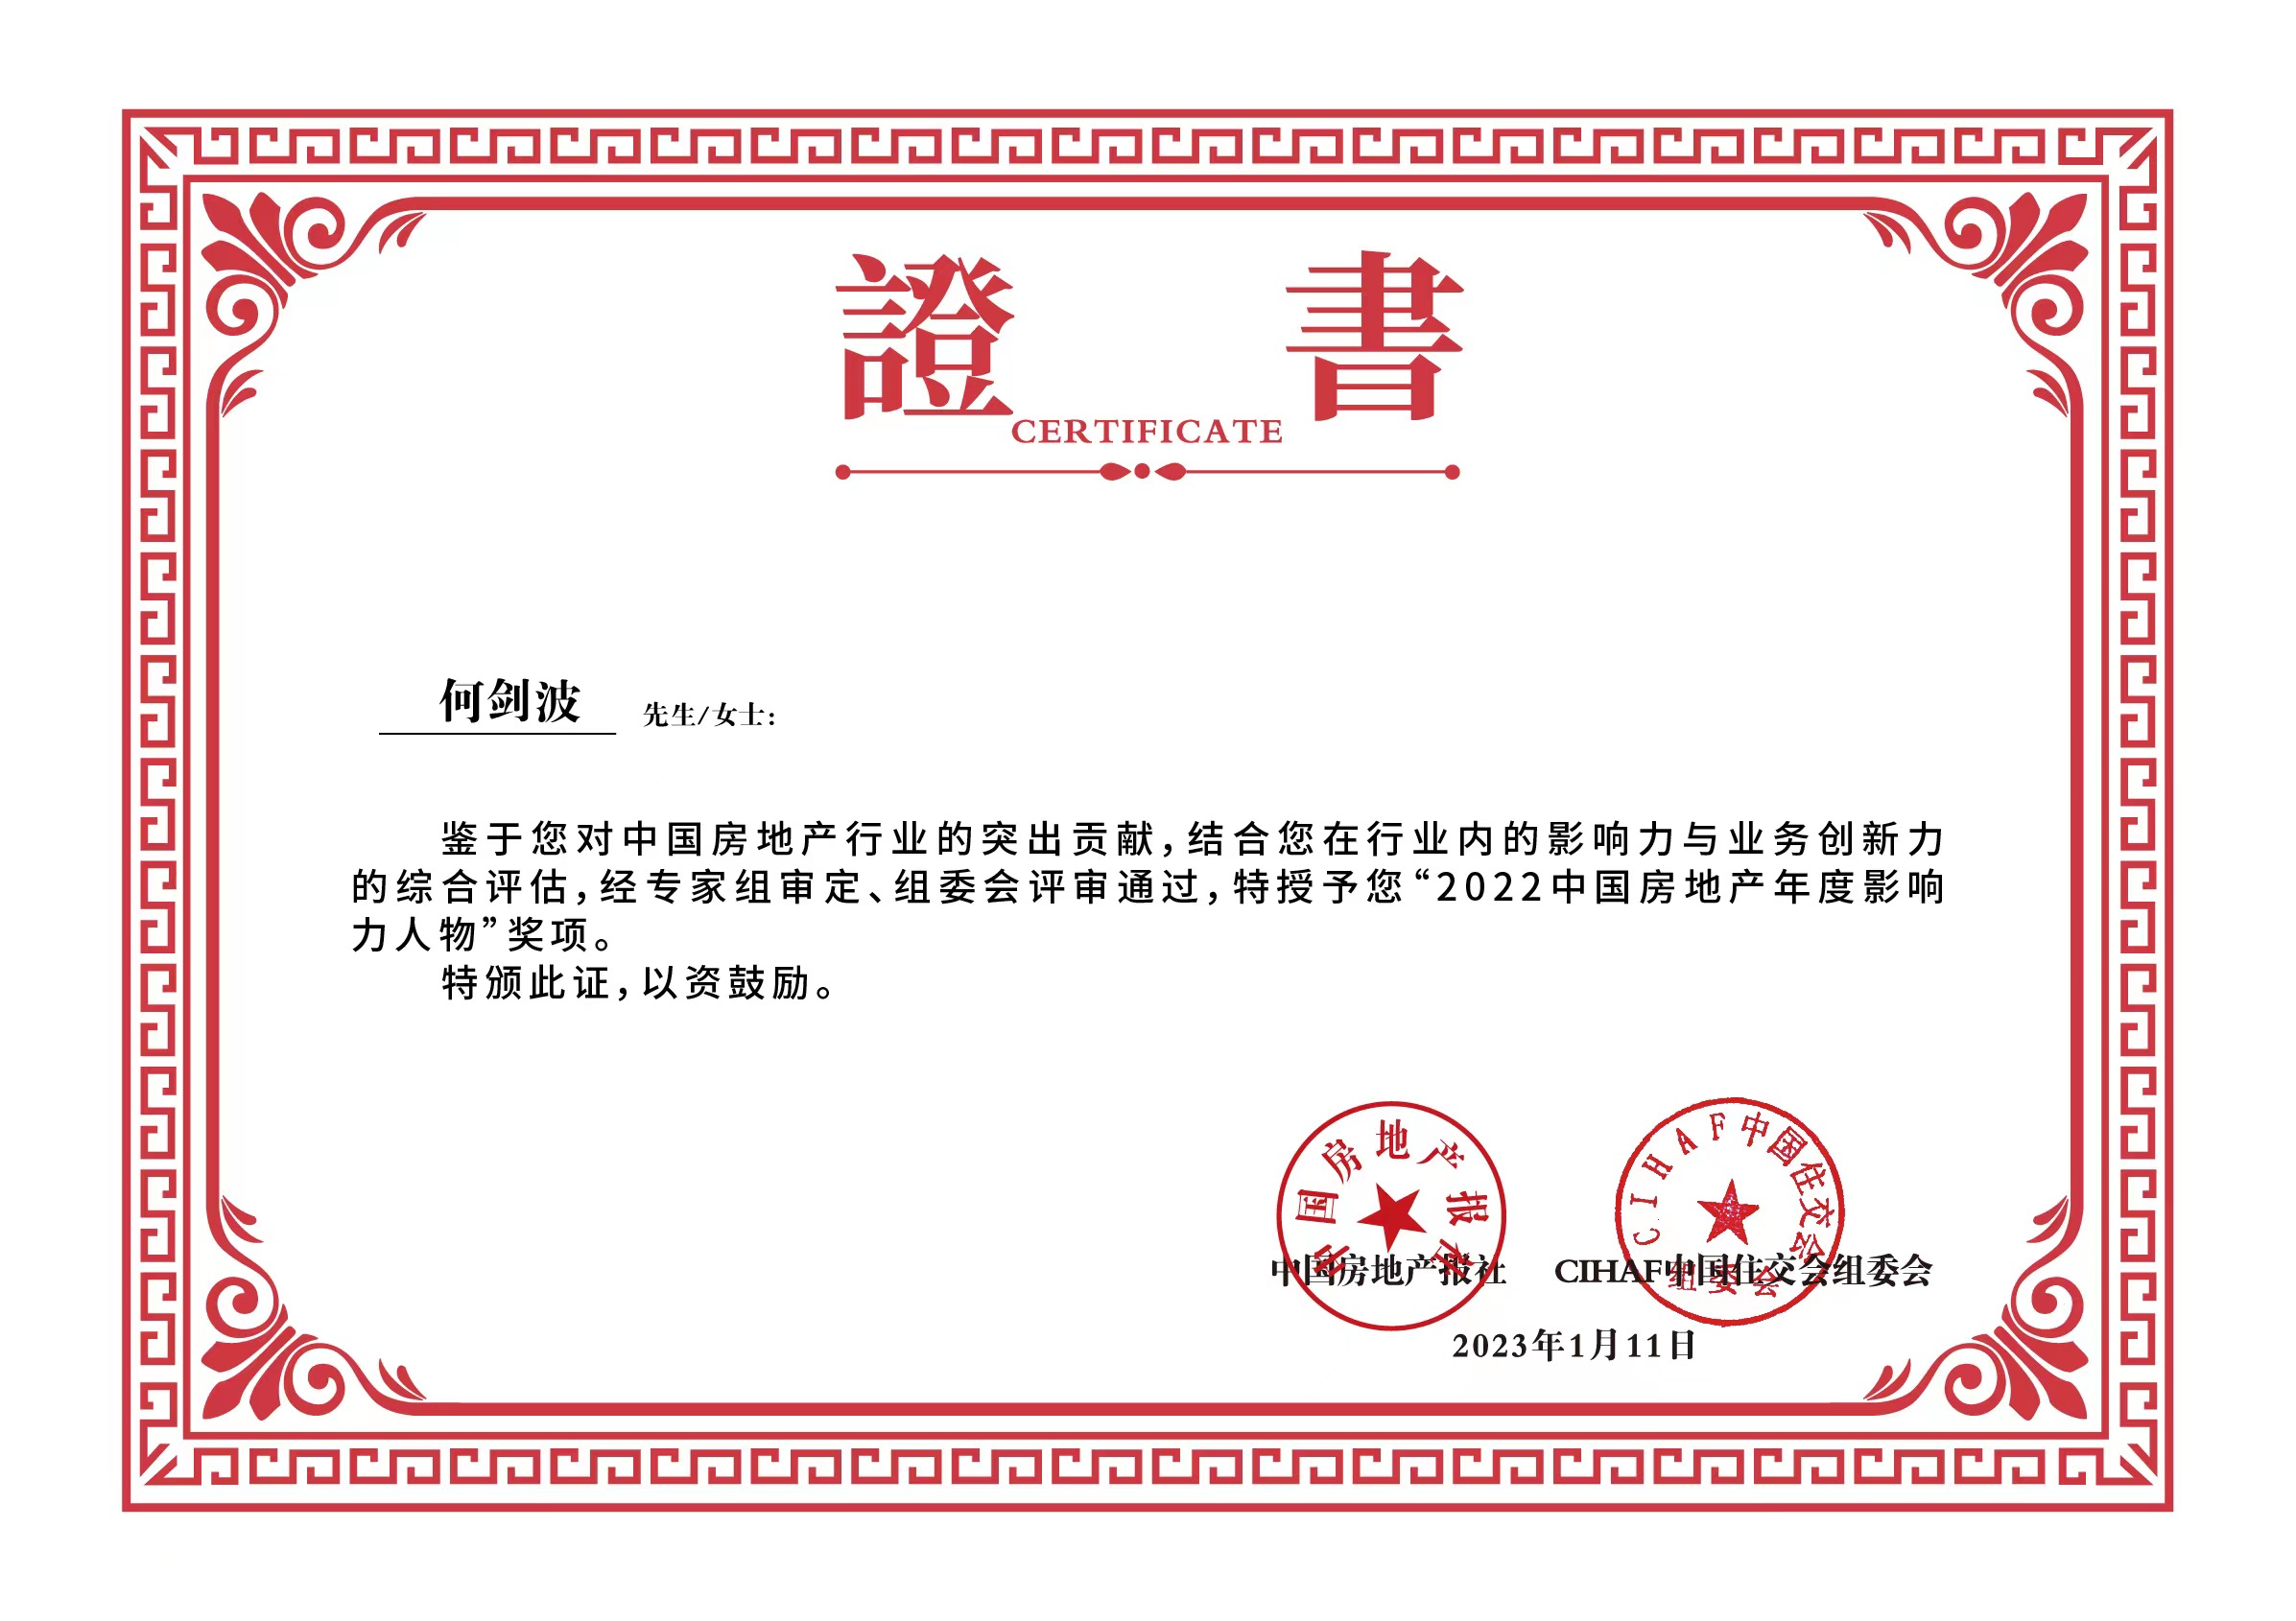 何剑波当选为“2022中国房地产年度影响力人物”